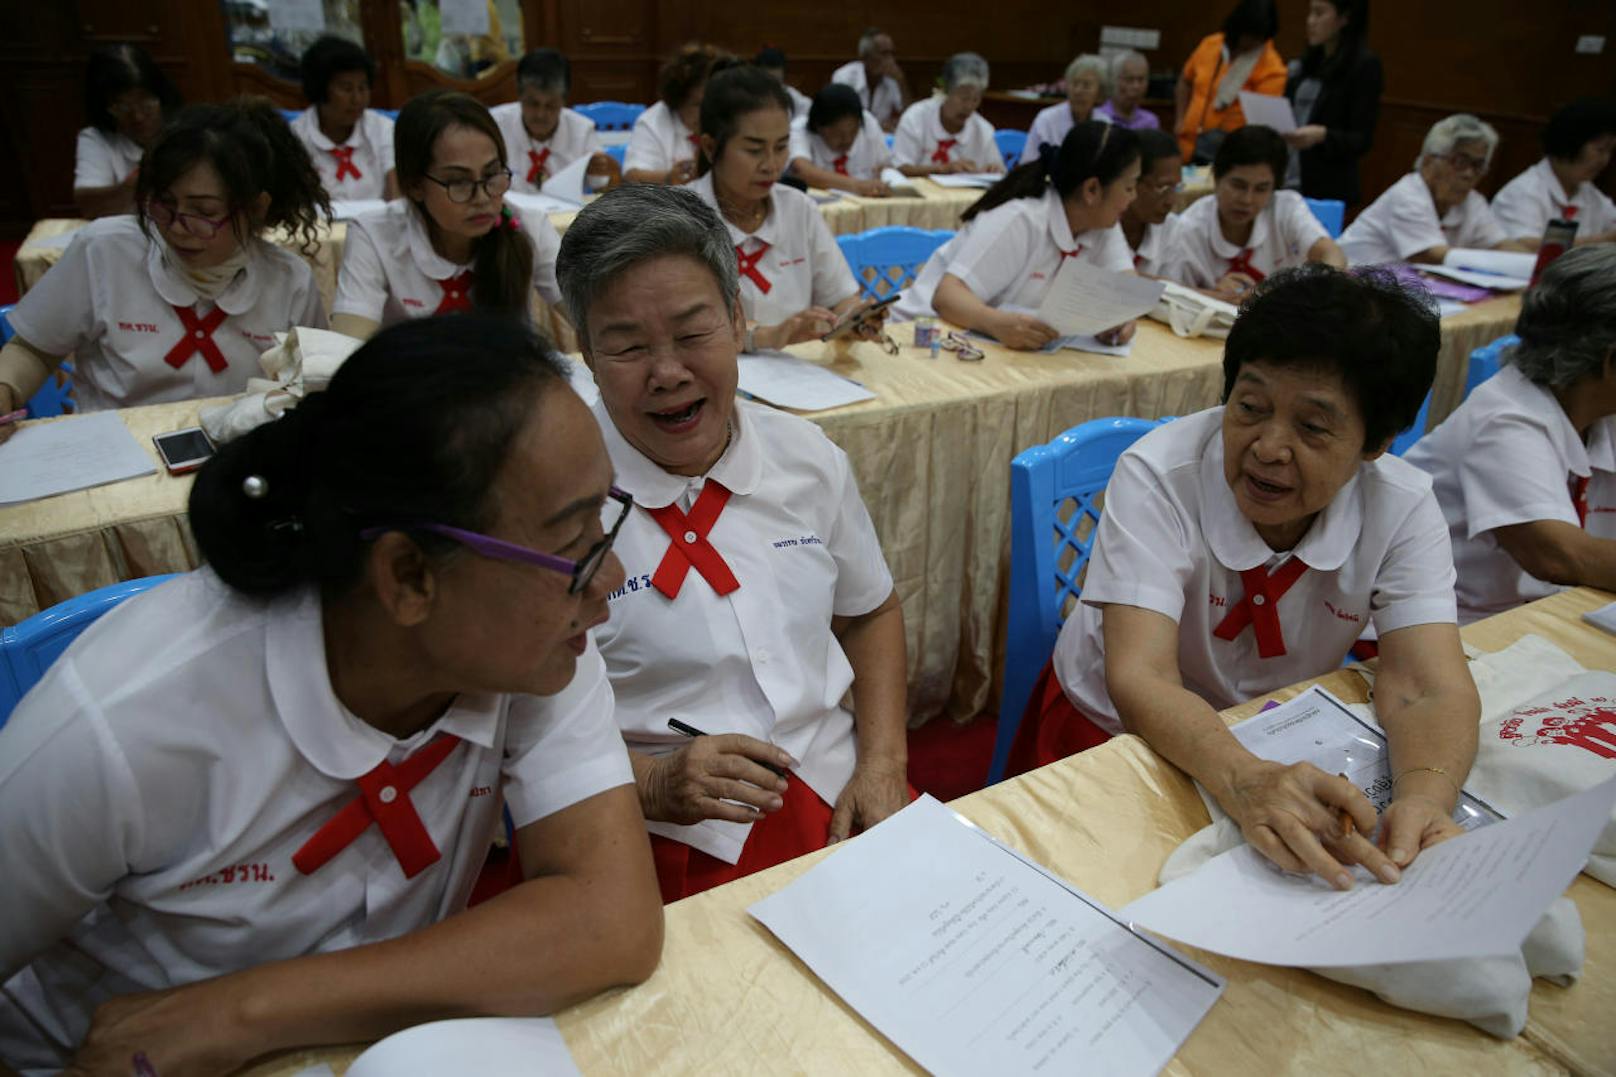 Immer mehr Senioren drücken in Thailand wieder die Schulbank. Es gibt sogar eigene Schulen für ältere Menschen wie diese in Chiang Rak Noi. Wie ihre Enkel und Urenkel tragen auch die Senioren-Schüler Schuluniformen.